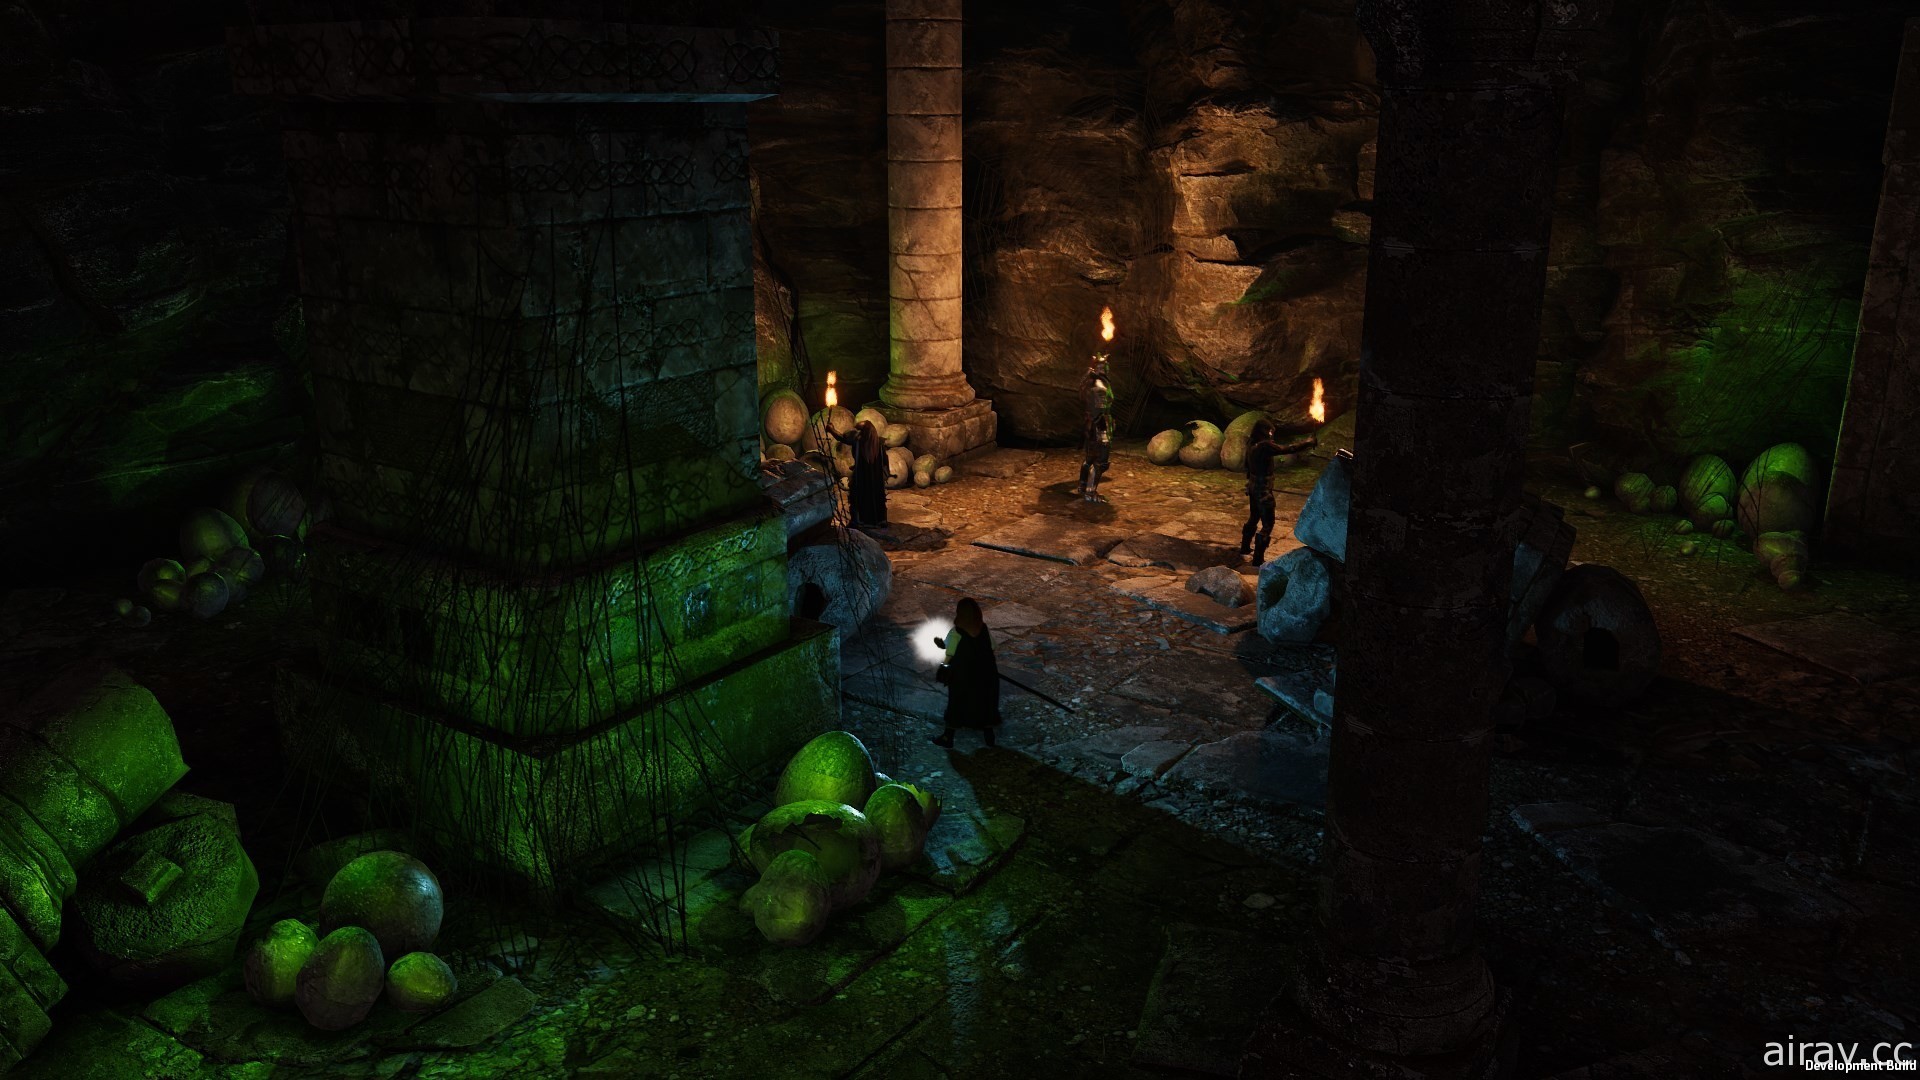 採用龍與地下城規則 RPG 新作《光芒：魔導師之冠》釋出免費試玩版 20 日展開搶先體驗